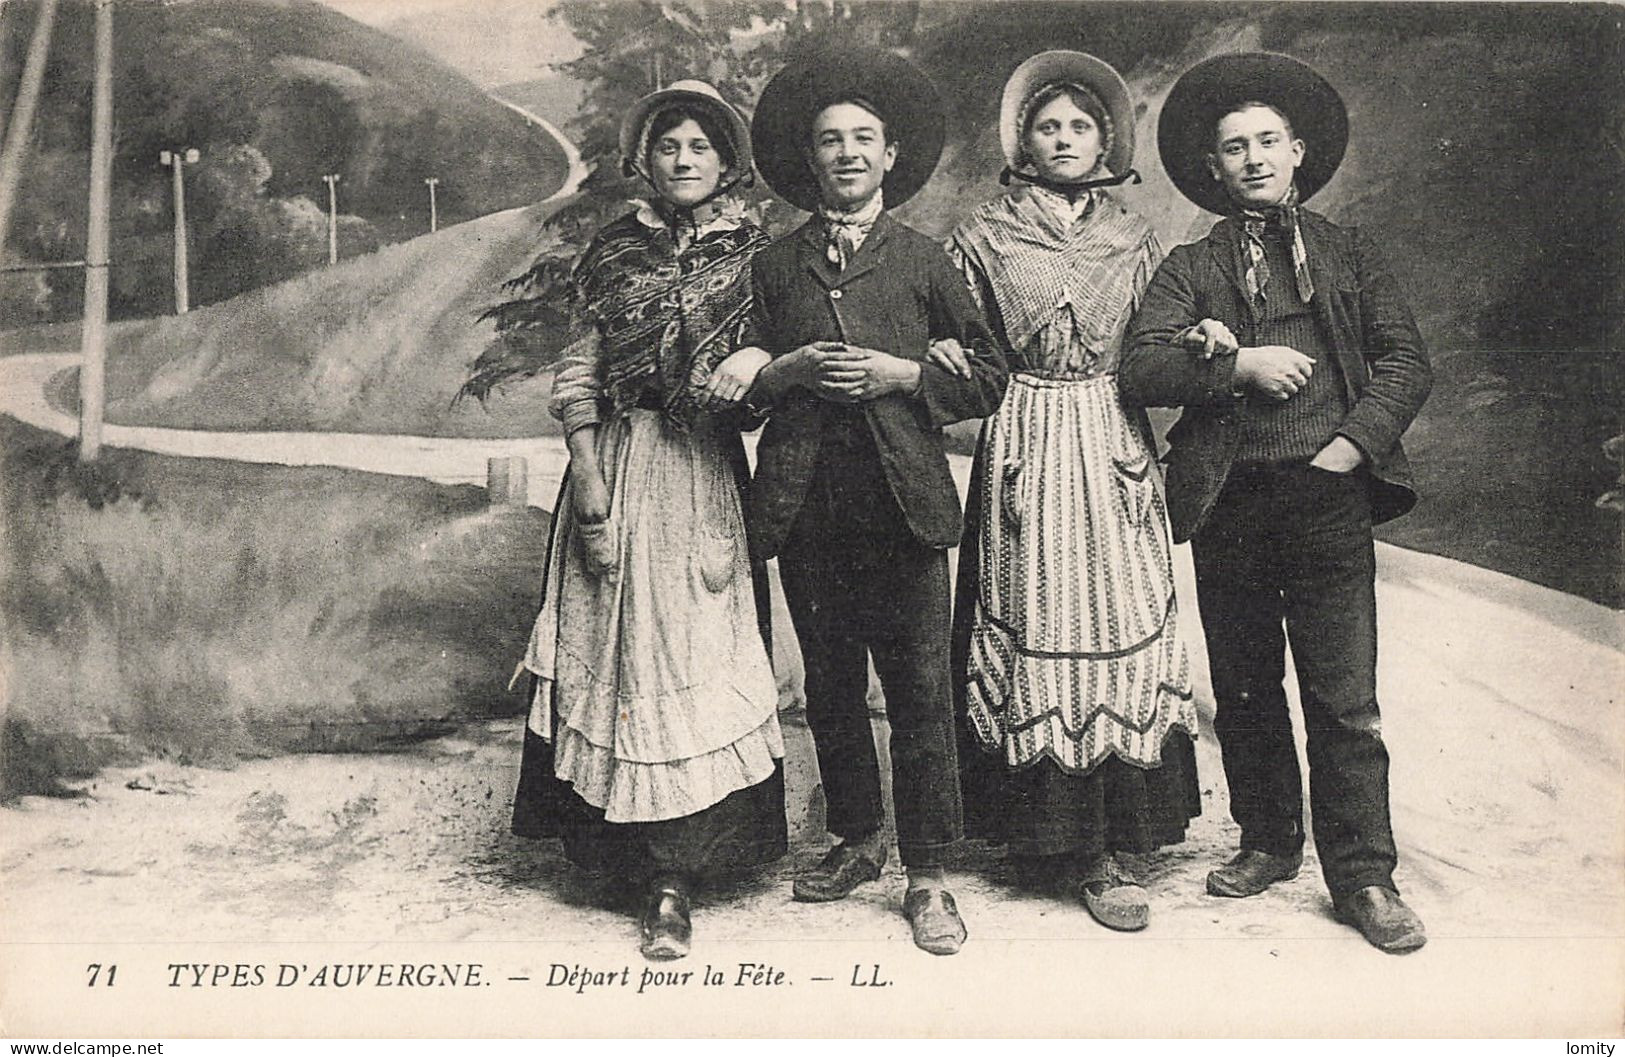 Destockage lot de 5 cartes postales CPA Auvergne type types folklore heureux couple équipage hauts plateaux vieux berger